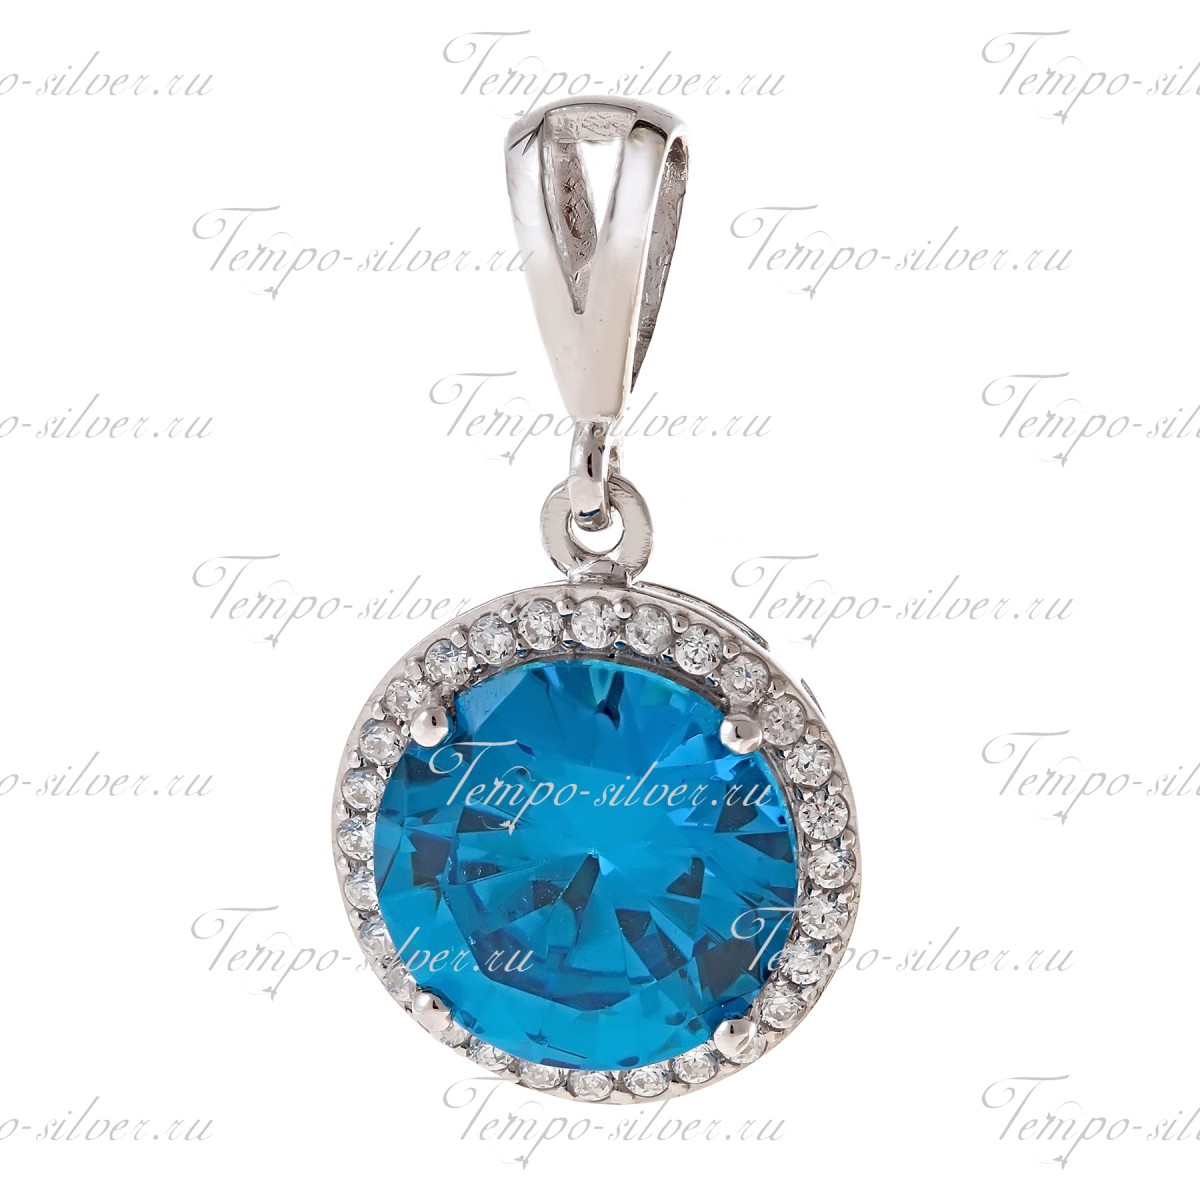 Подвеска из серебра с крупным голубым камнем круглой формы, окруженный россыпью белых камней цена